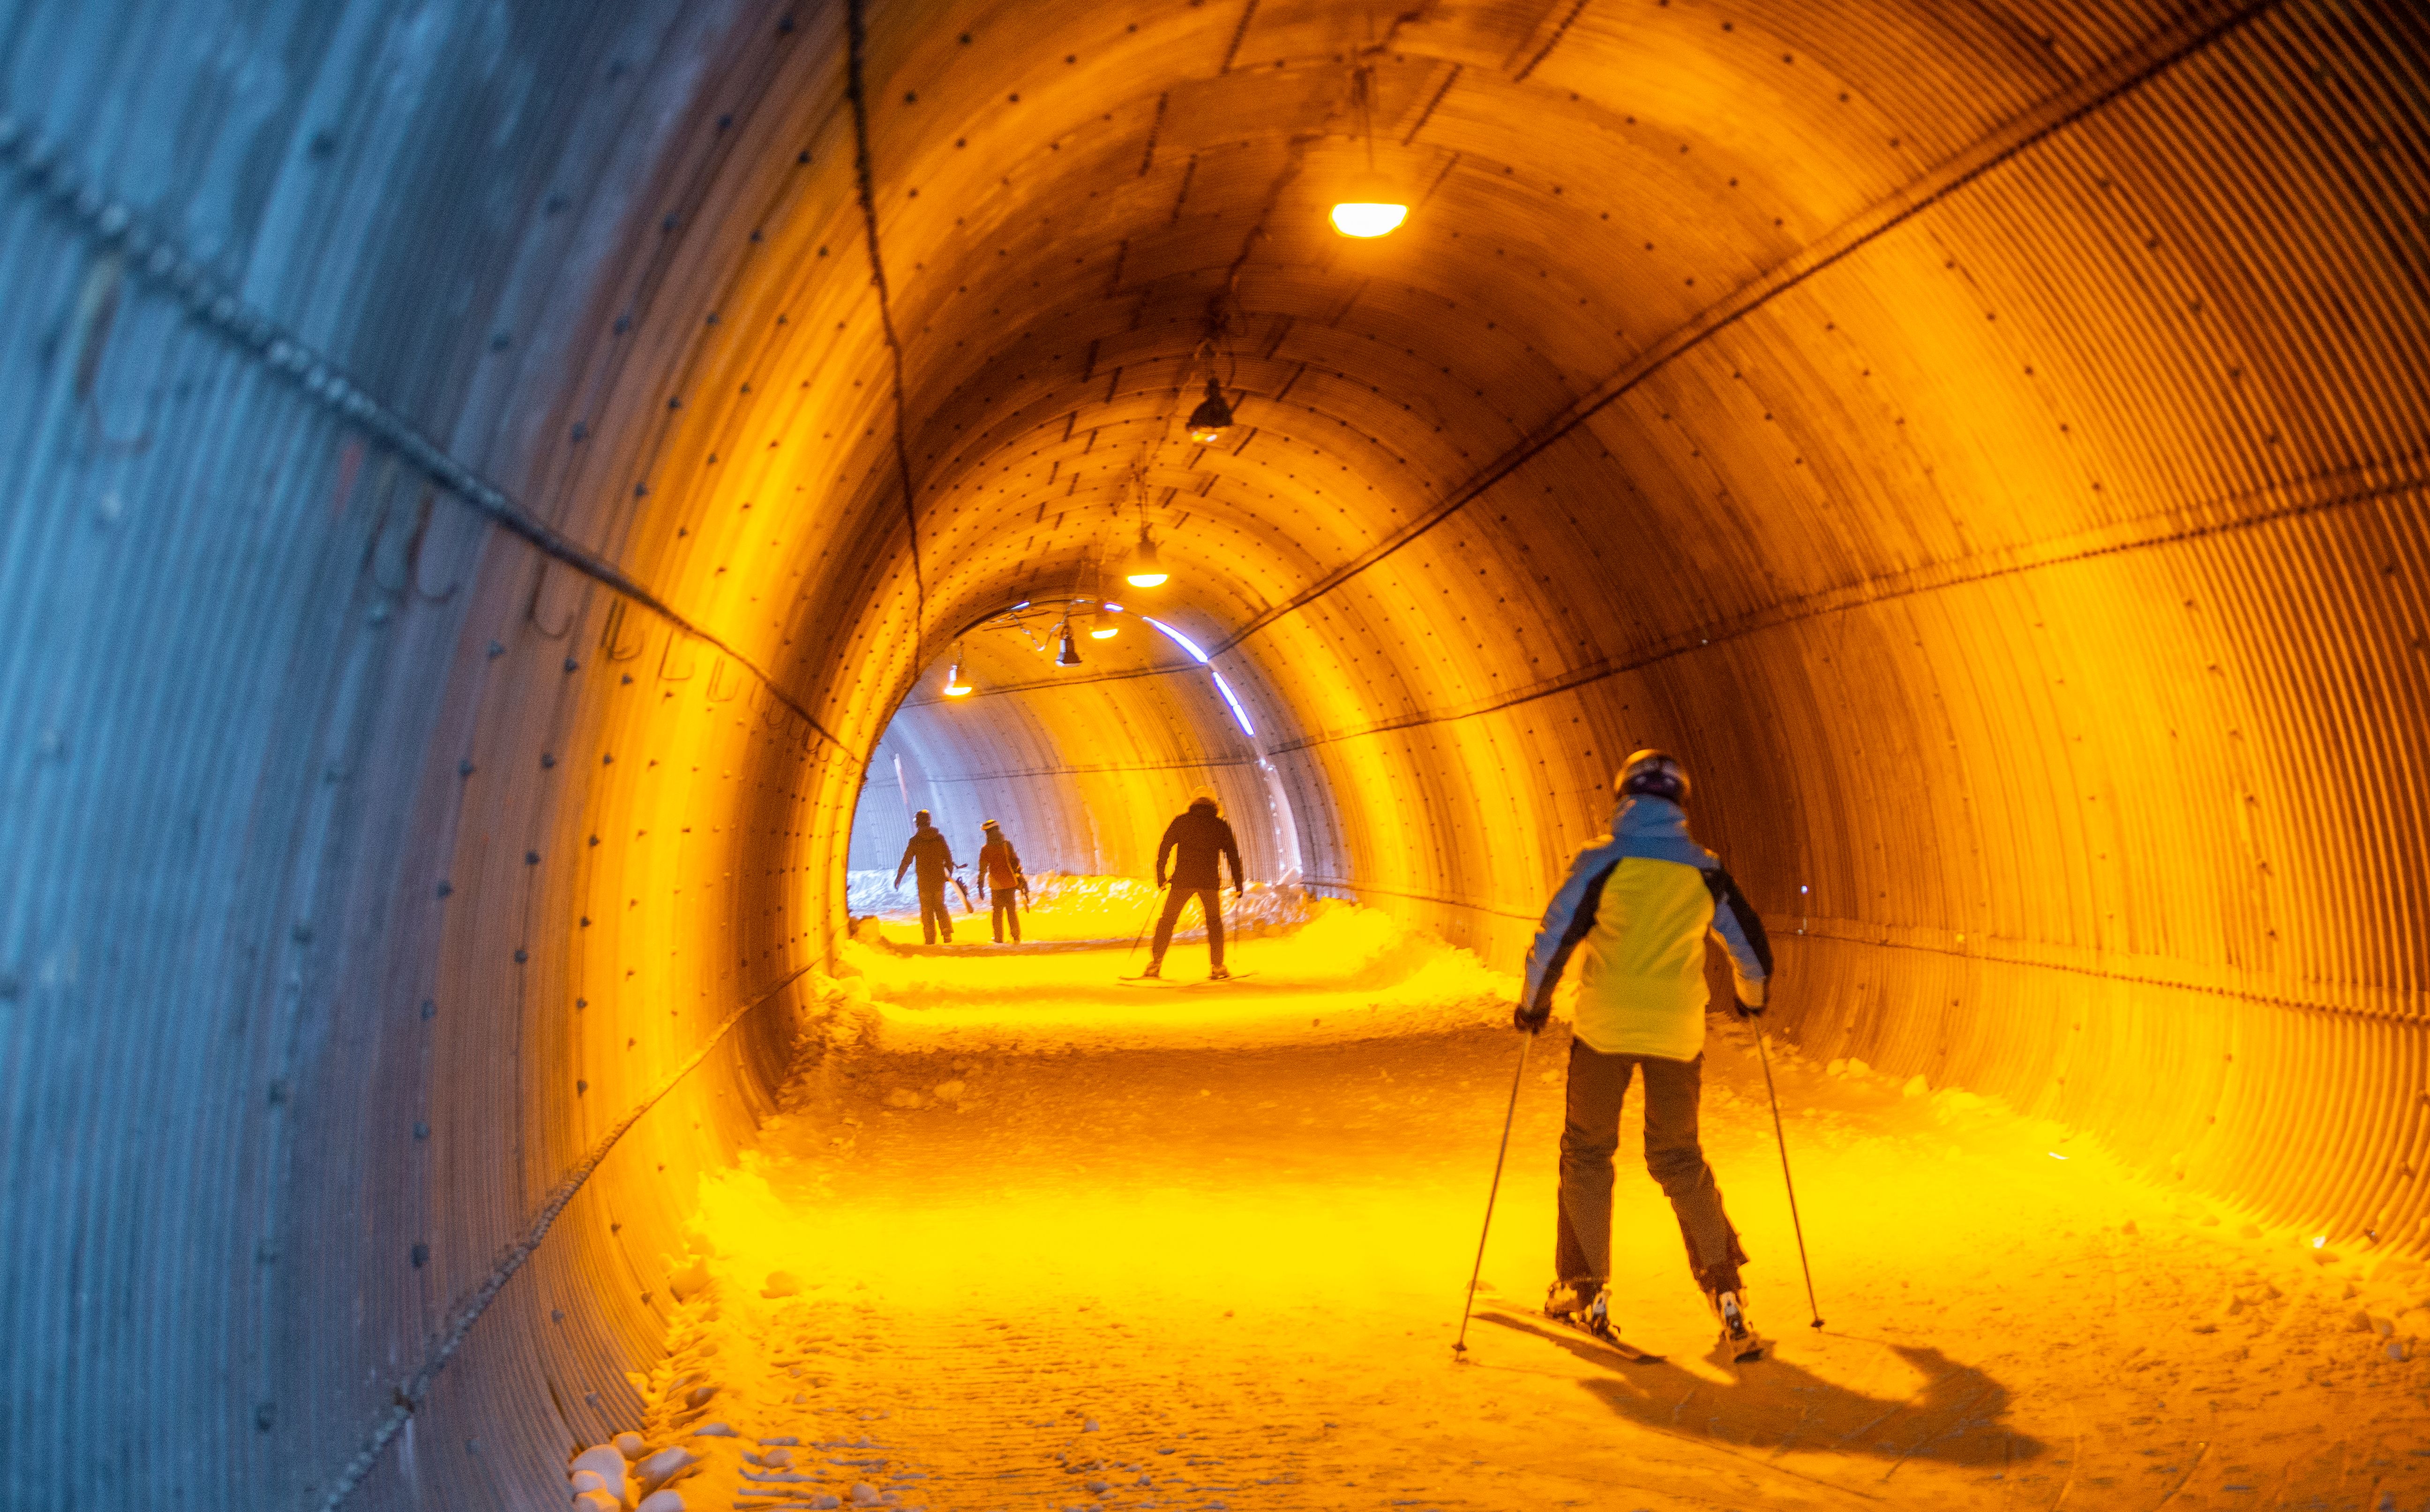 De skitunnel op de Marmolada herinnert enigszins aan het ondergrondse leven van weleer